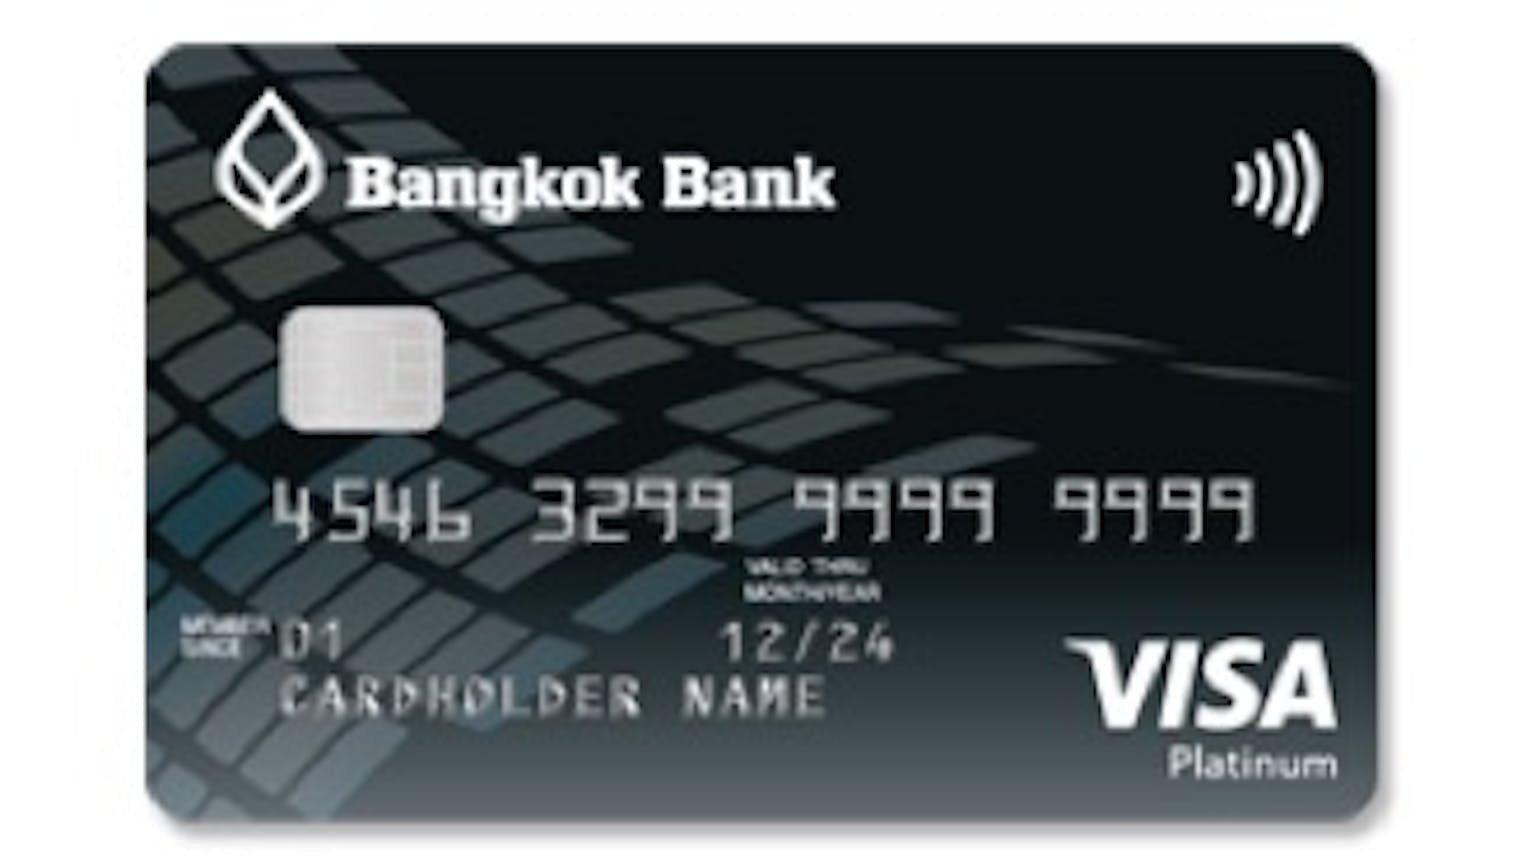 บัตรเครดิต วีซ่า แพลทินั่ม ธนาคารกรุงเทพ